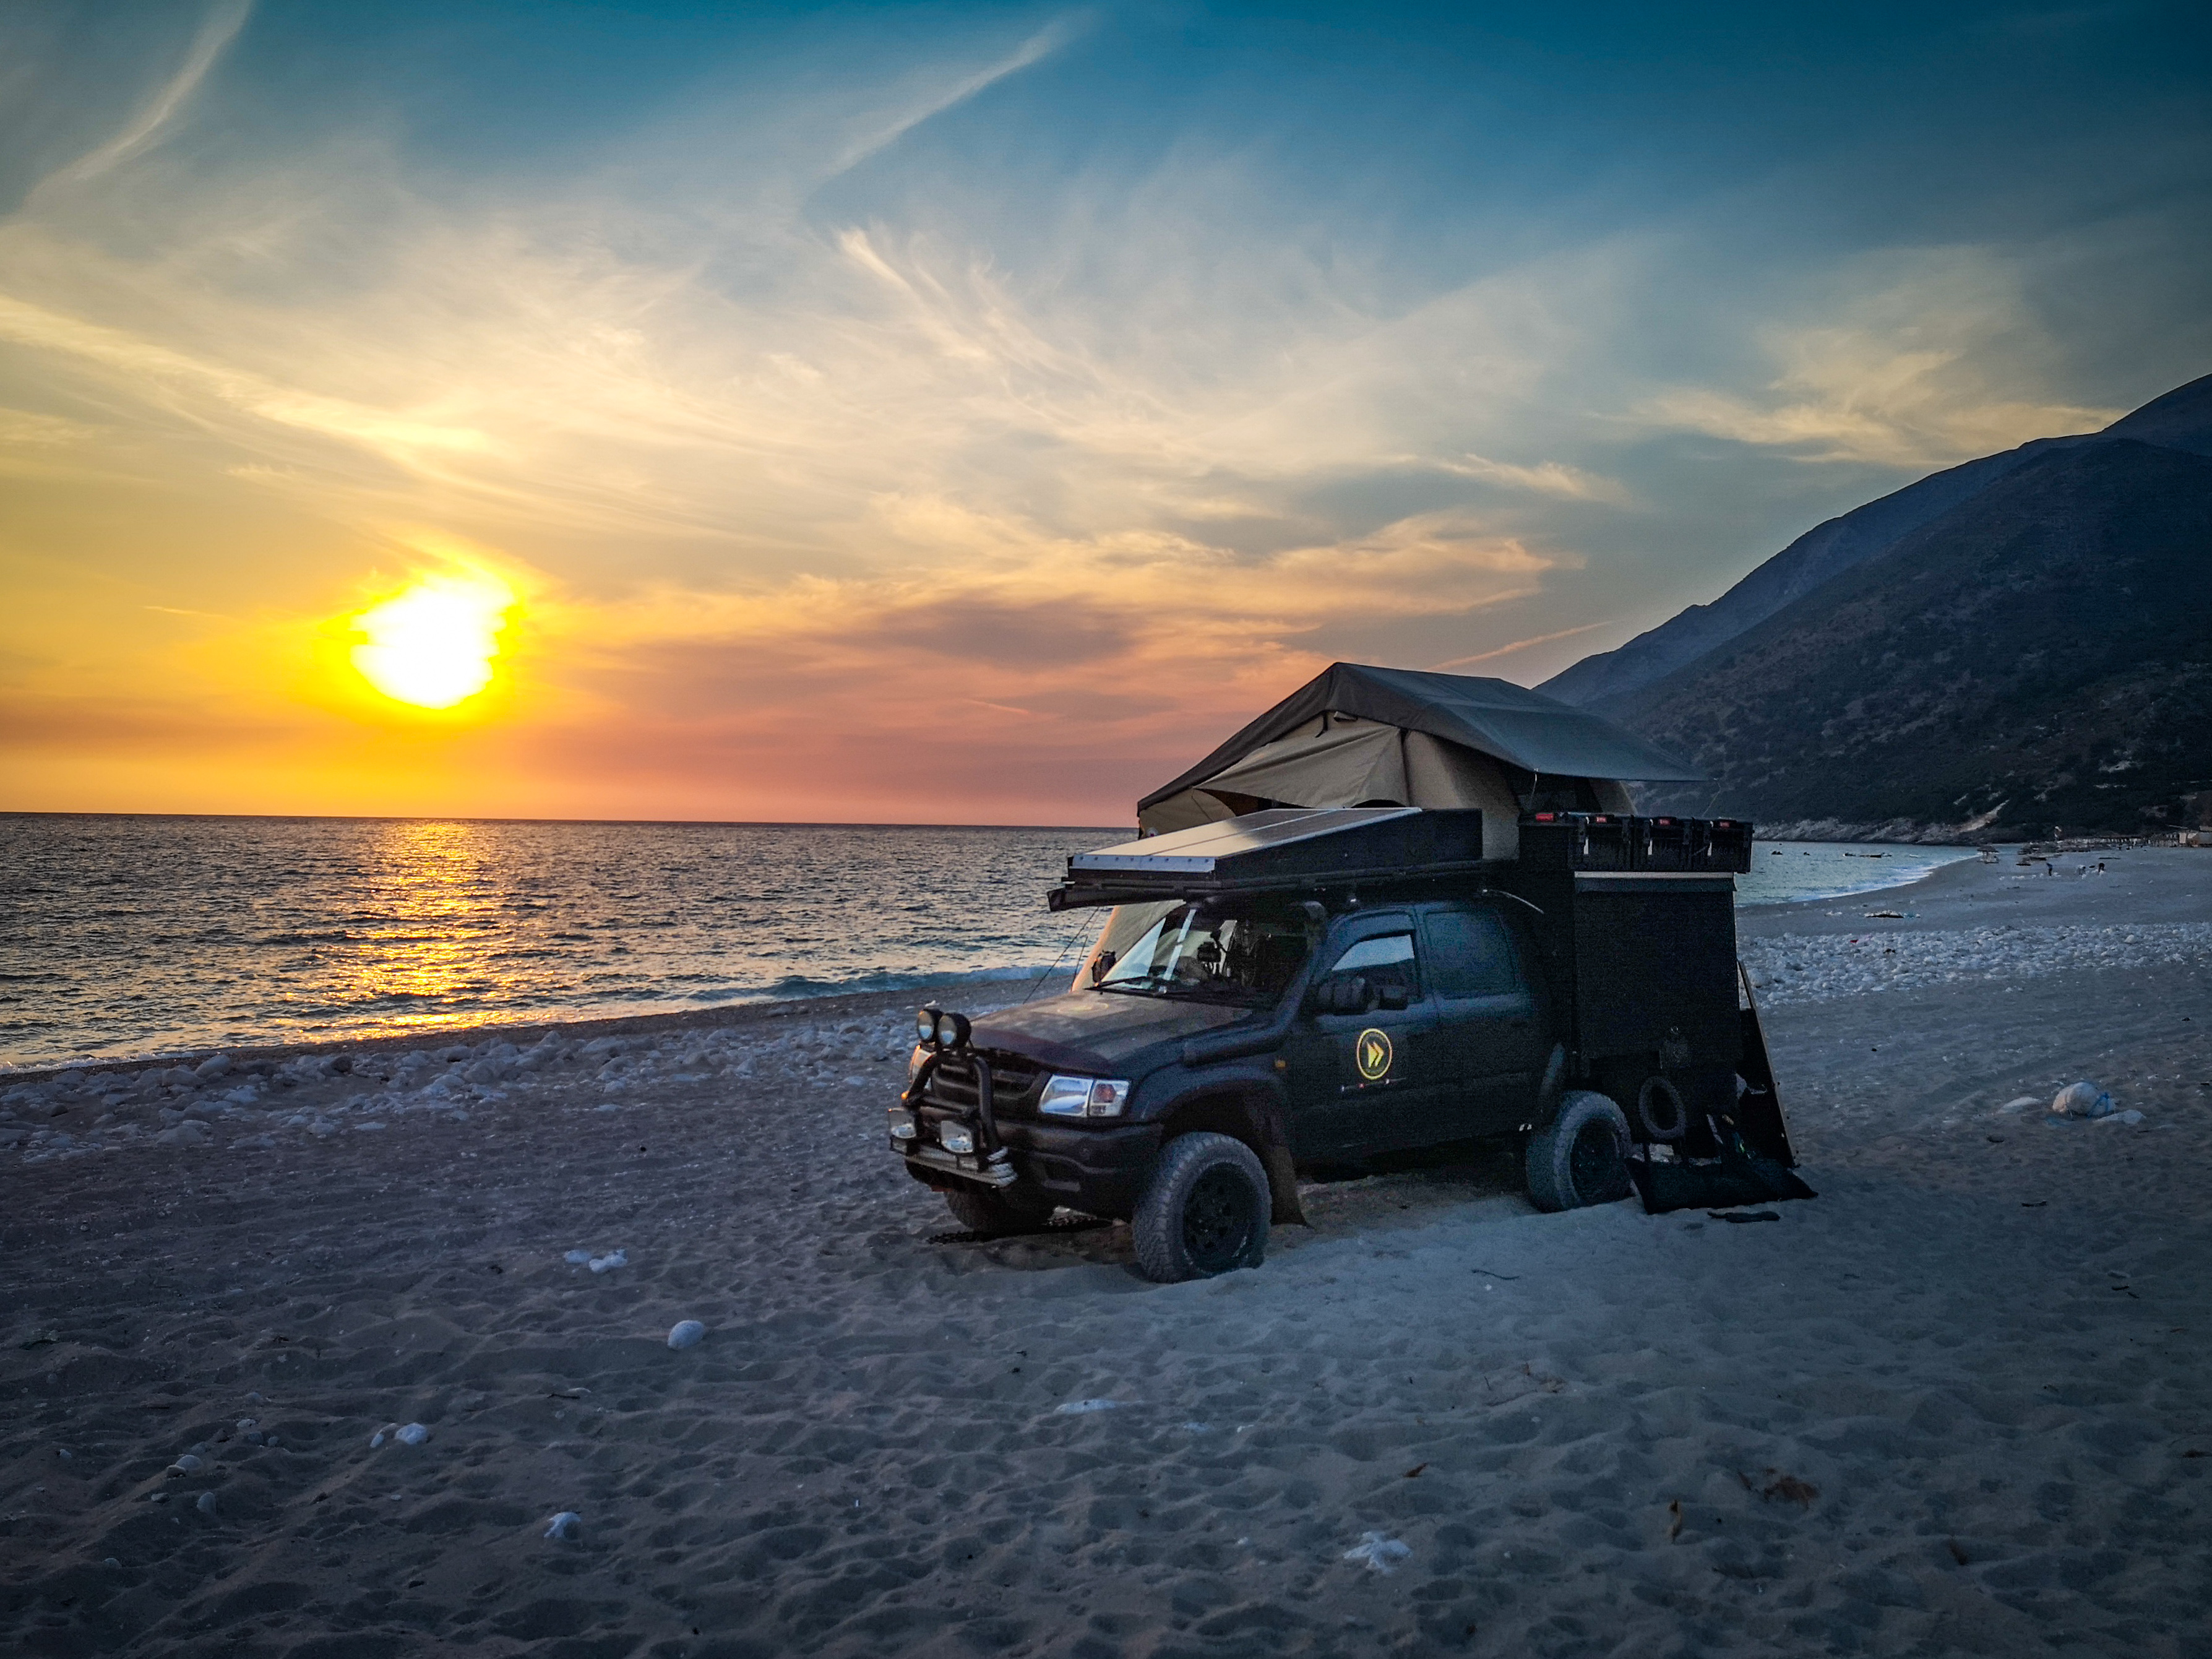 Zachód słońca, samochód terenowy na plaży w Albanii. Obozowanie, spanie  na dziko.
Albania
4x4 pinezki, mapa, atrakcje, plan podróży miejscówki